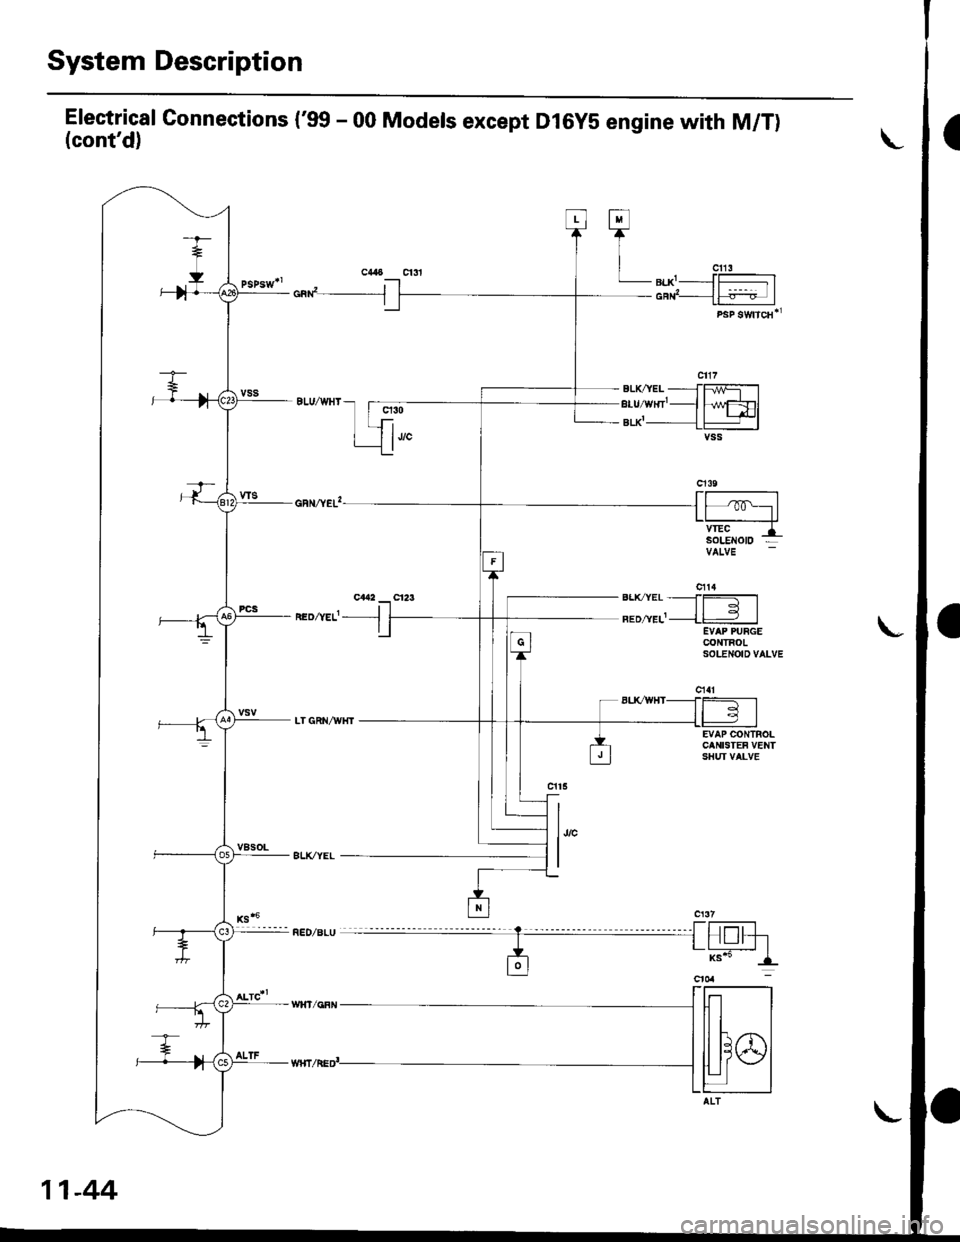 HONDA CIVIC 1998 6.G Owners Manual System Description
Electrical Gonnections (99 - 00 Models except Dl6yS engine with M/T)(contd)
cad__J
neozvef- -l
q30
1""
h/wFDlt+l-lvss
EVAP CONTROLCANISTEF VENTSHUI VALVE
l,,"
I
Fl
TI
| "u,LB|.X-